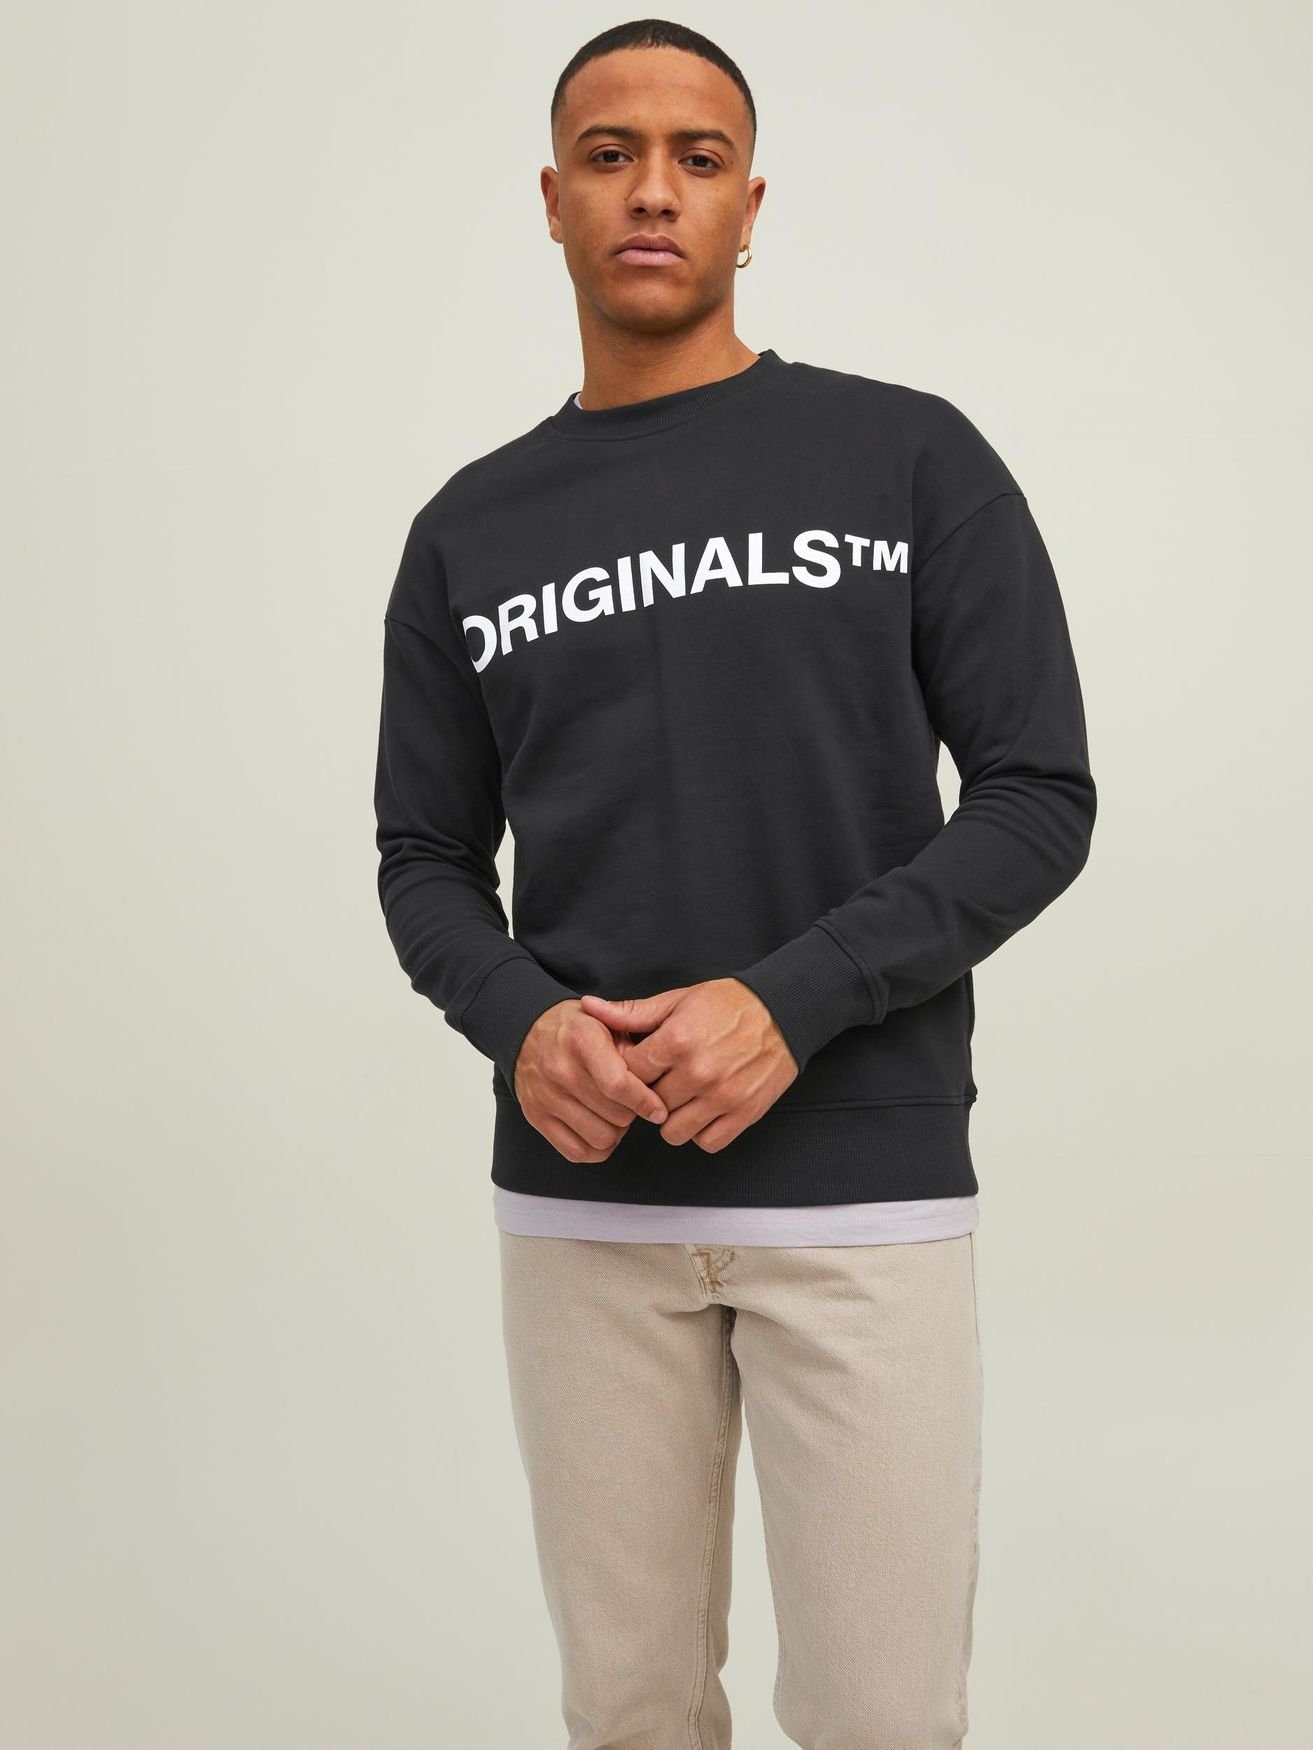 Online-Shopping zu Schnäppchenpreisen Jack & Jones Sweatshirt in Schwarz-2 Langarm Basic Sweater Rundhals JORCLEAN Shirt 4672 Pullover